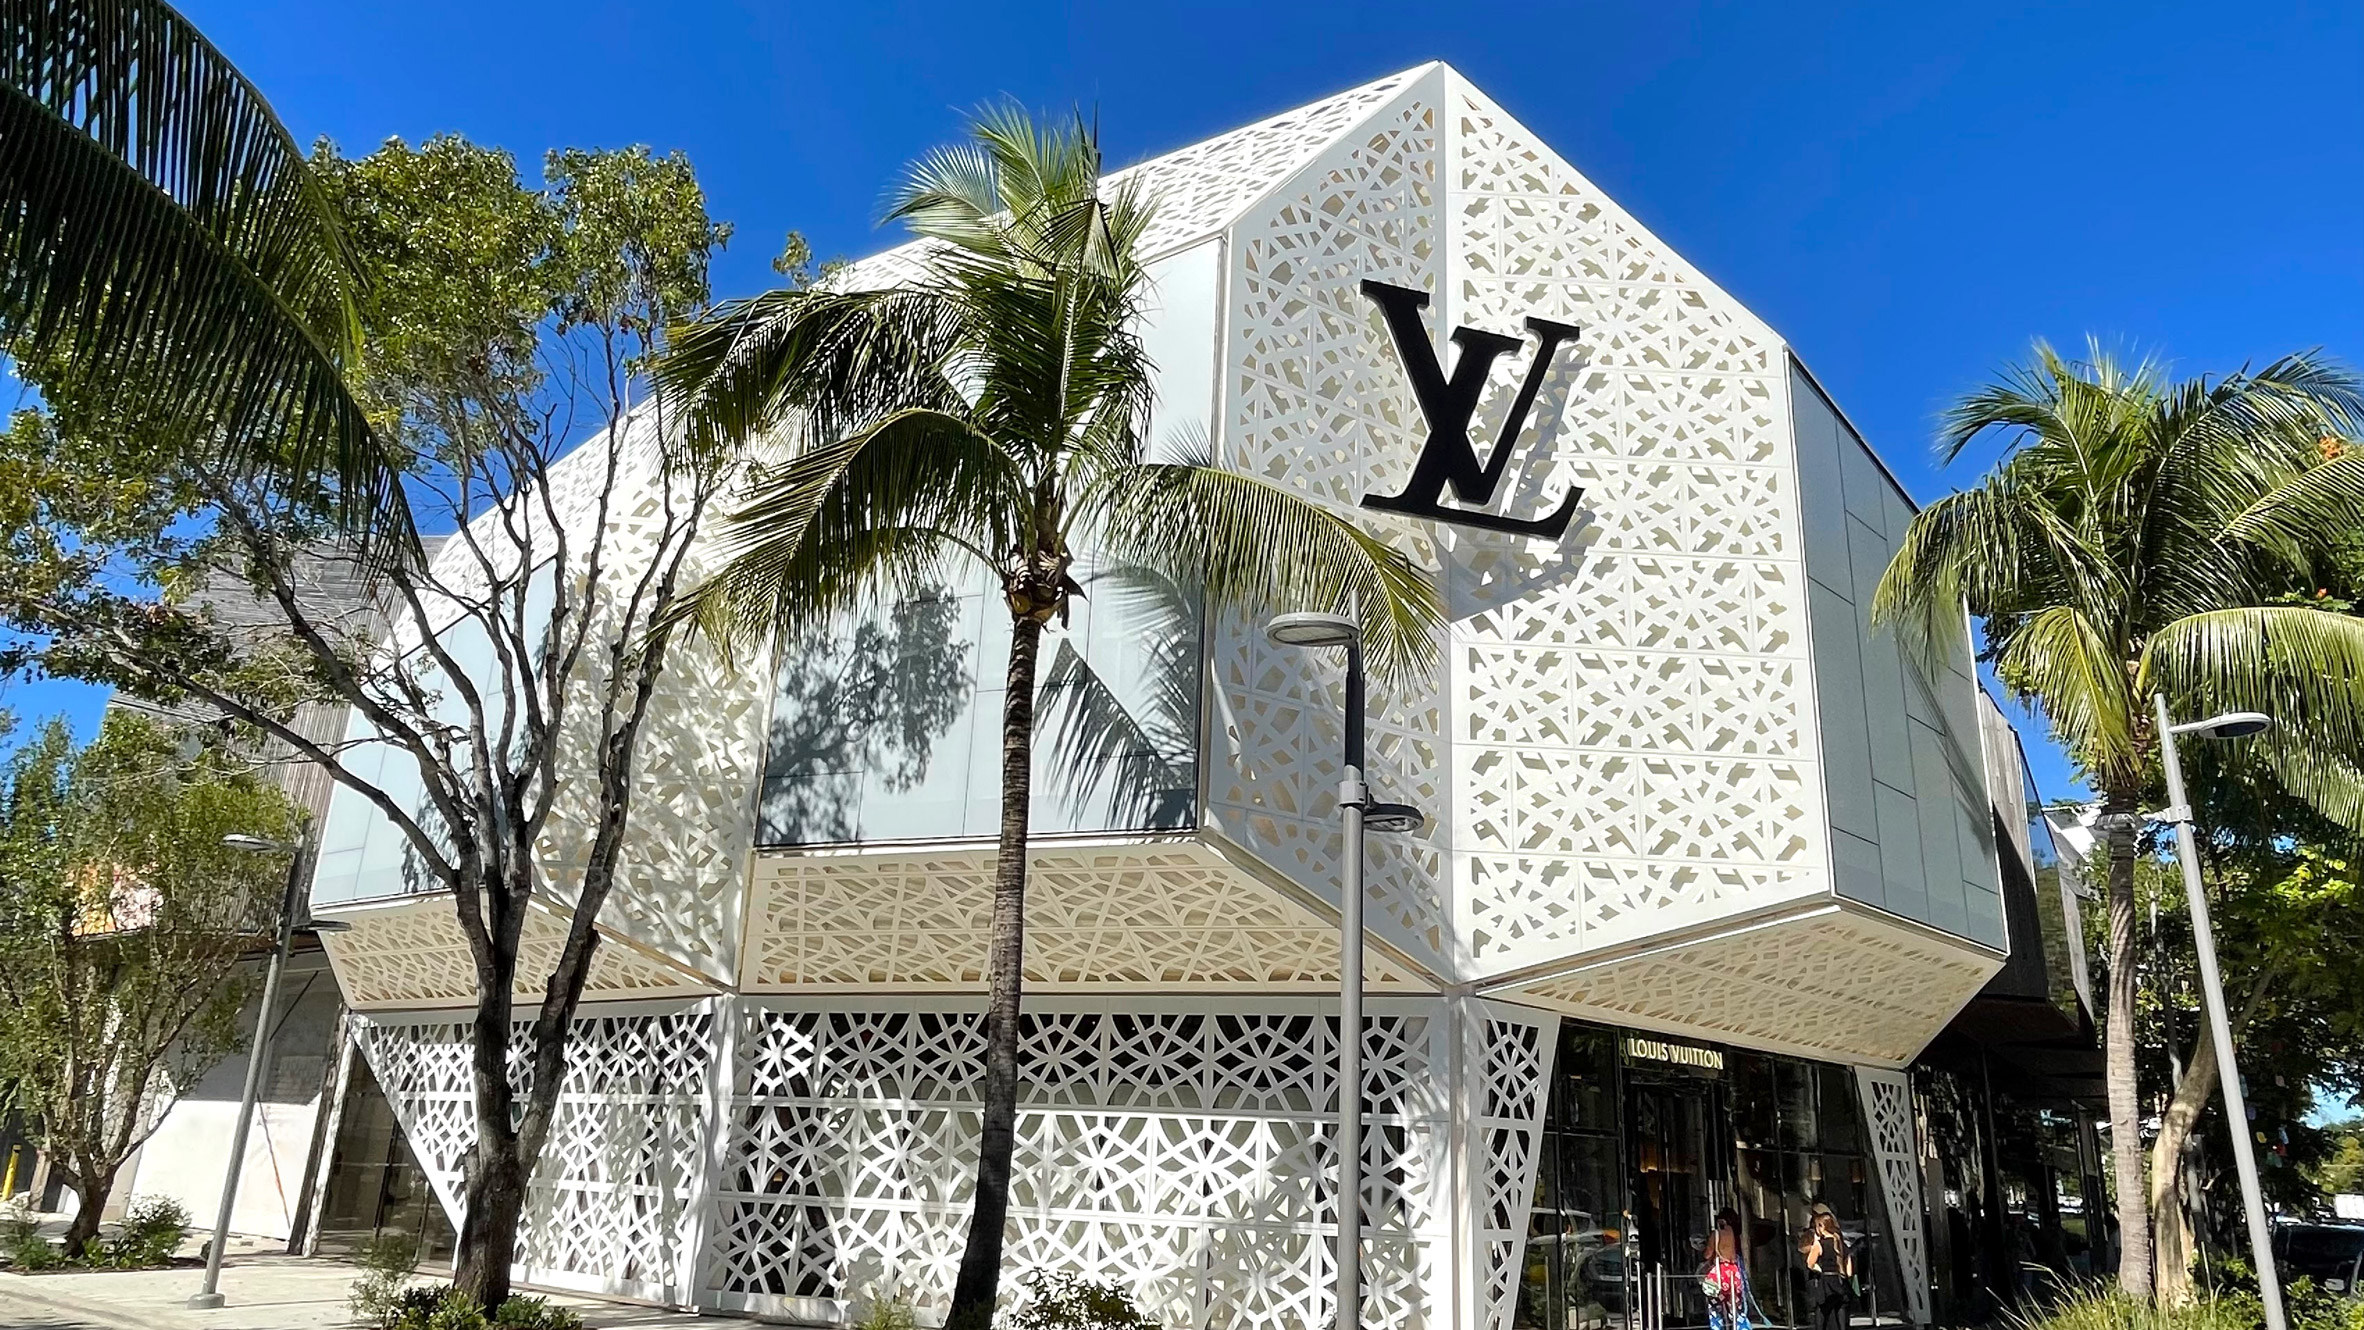 Louis Vuitton Objets Nomades Design Miami 2017